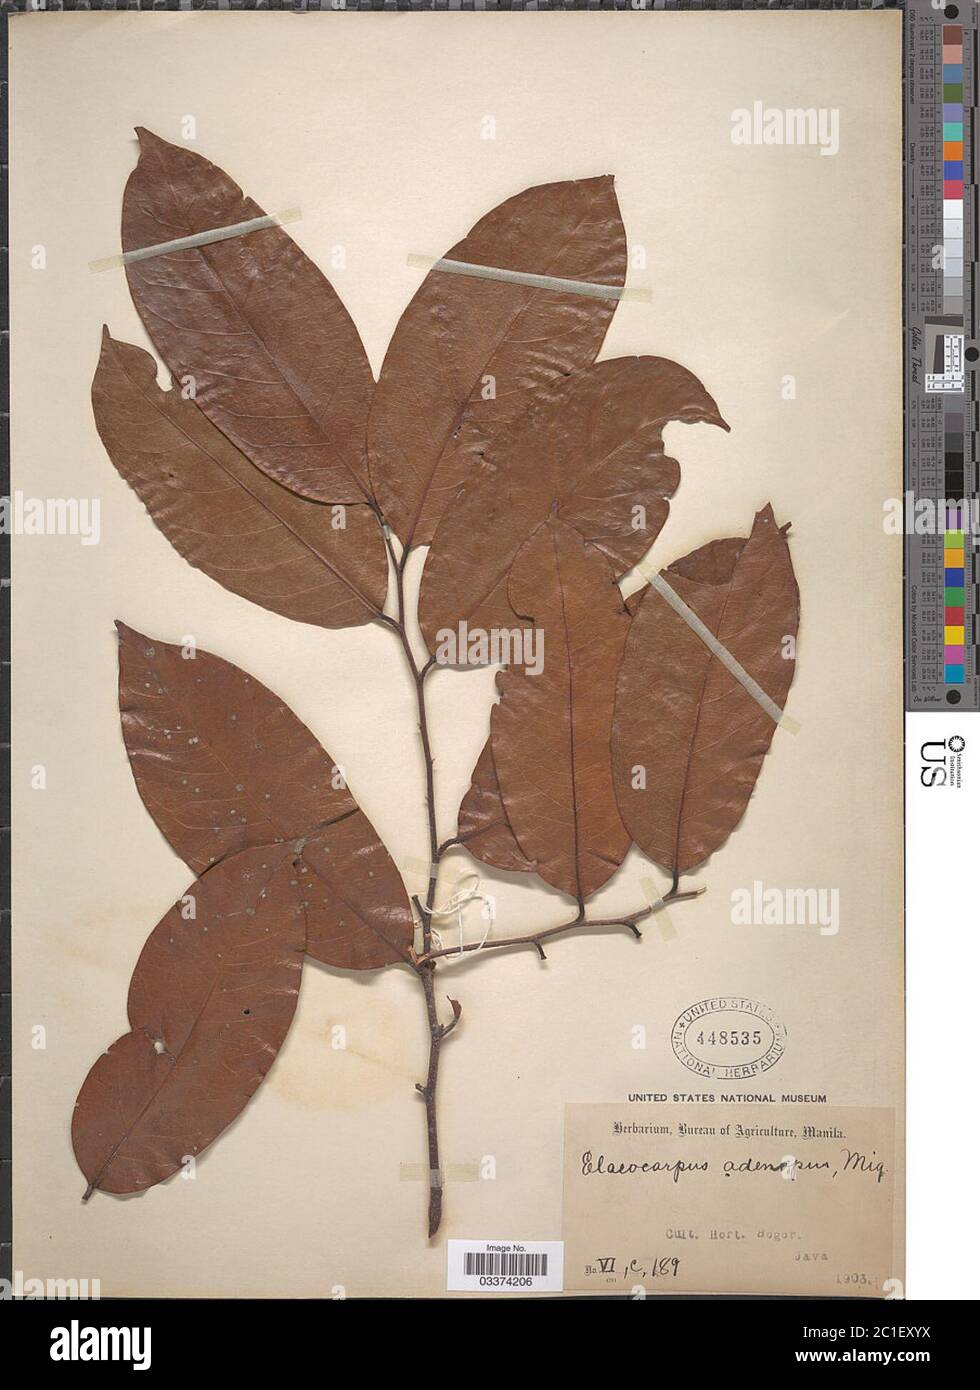 Elaeocarpus adenopus Miq Elaeocarpus adenopus Miq. Stock Photo